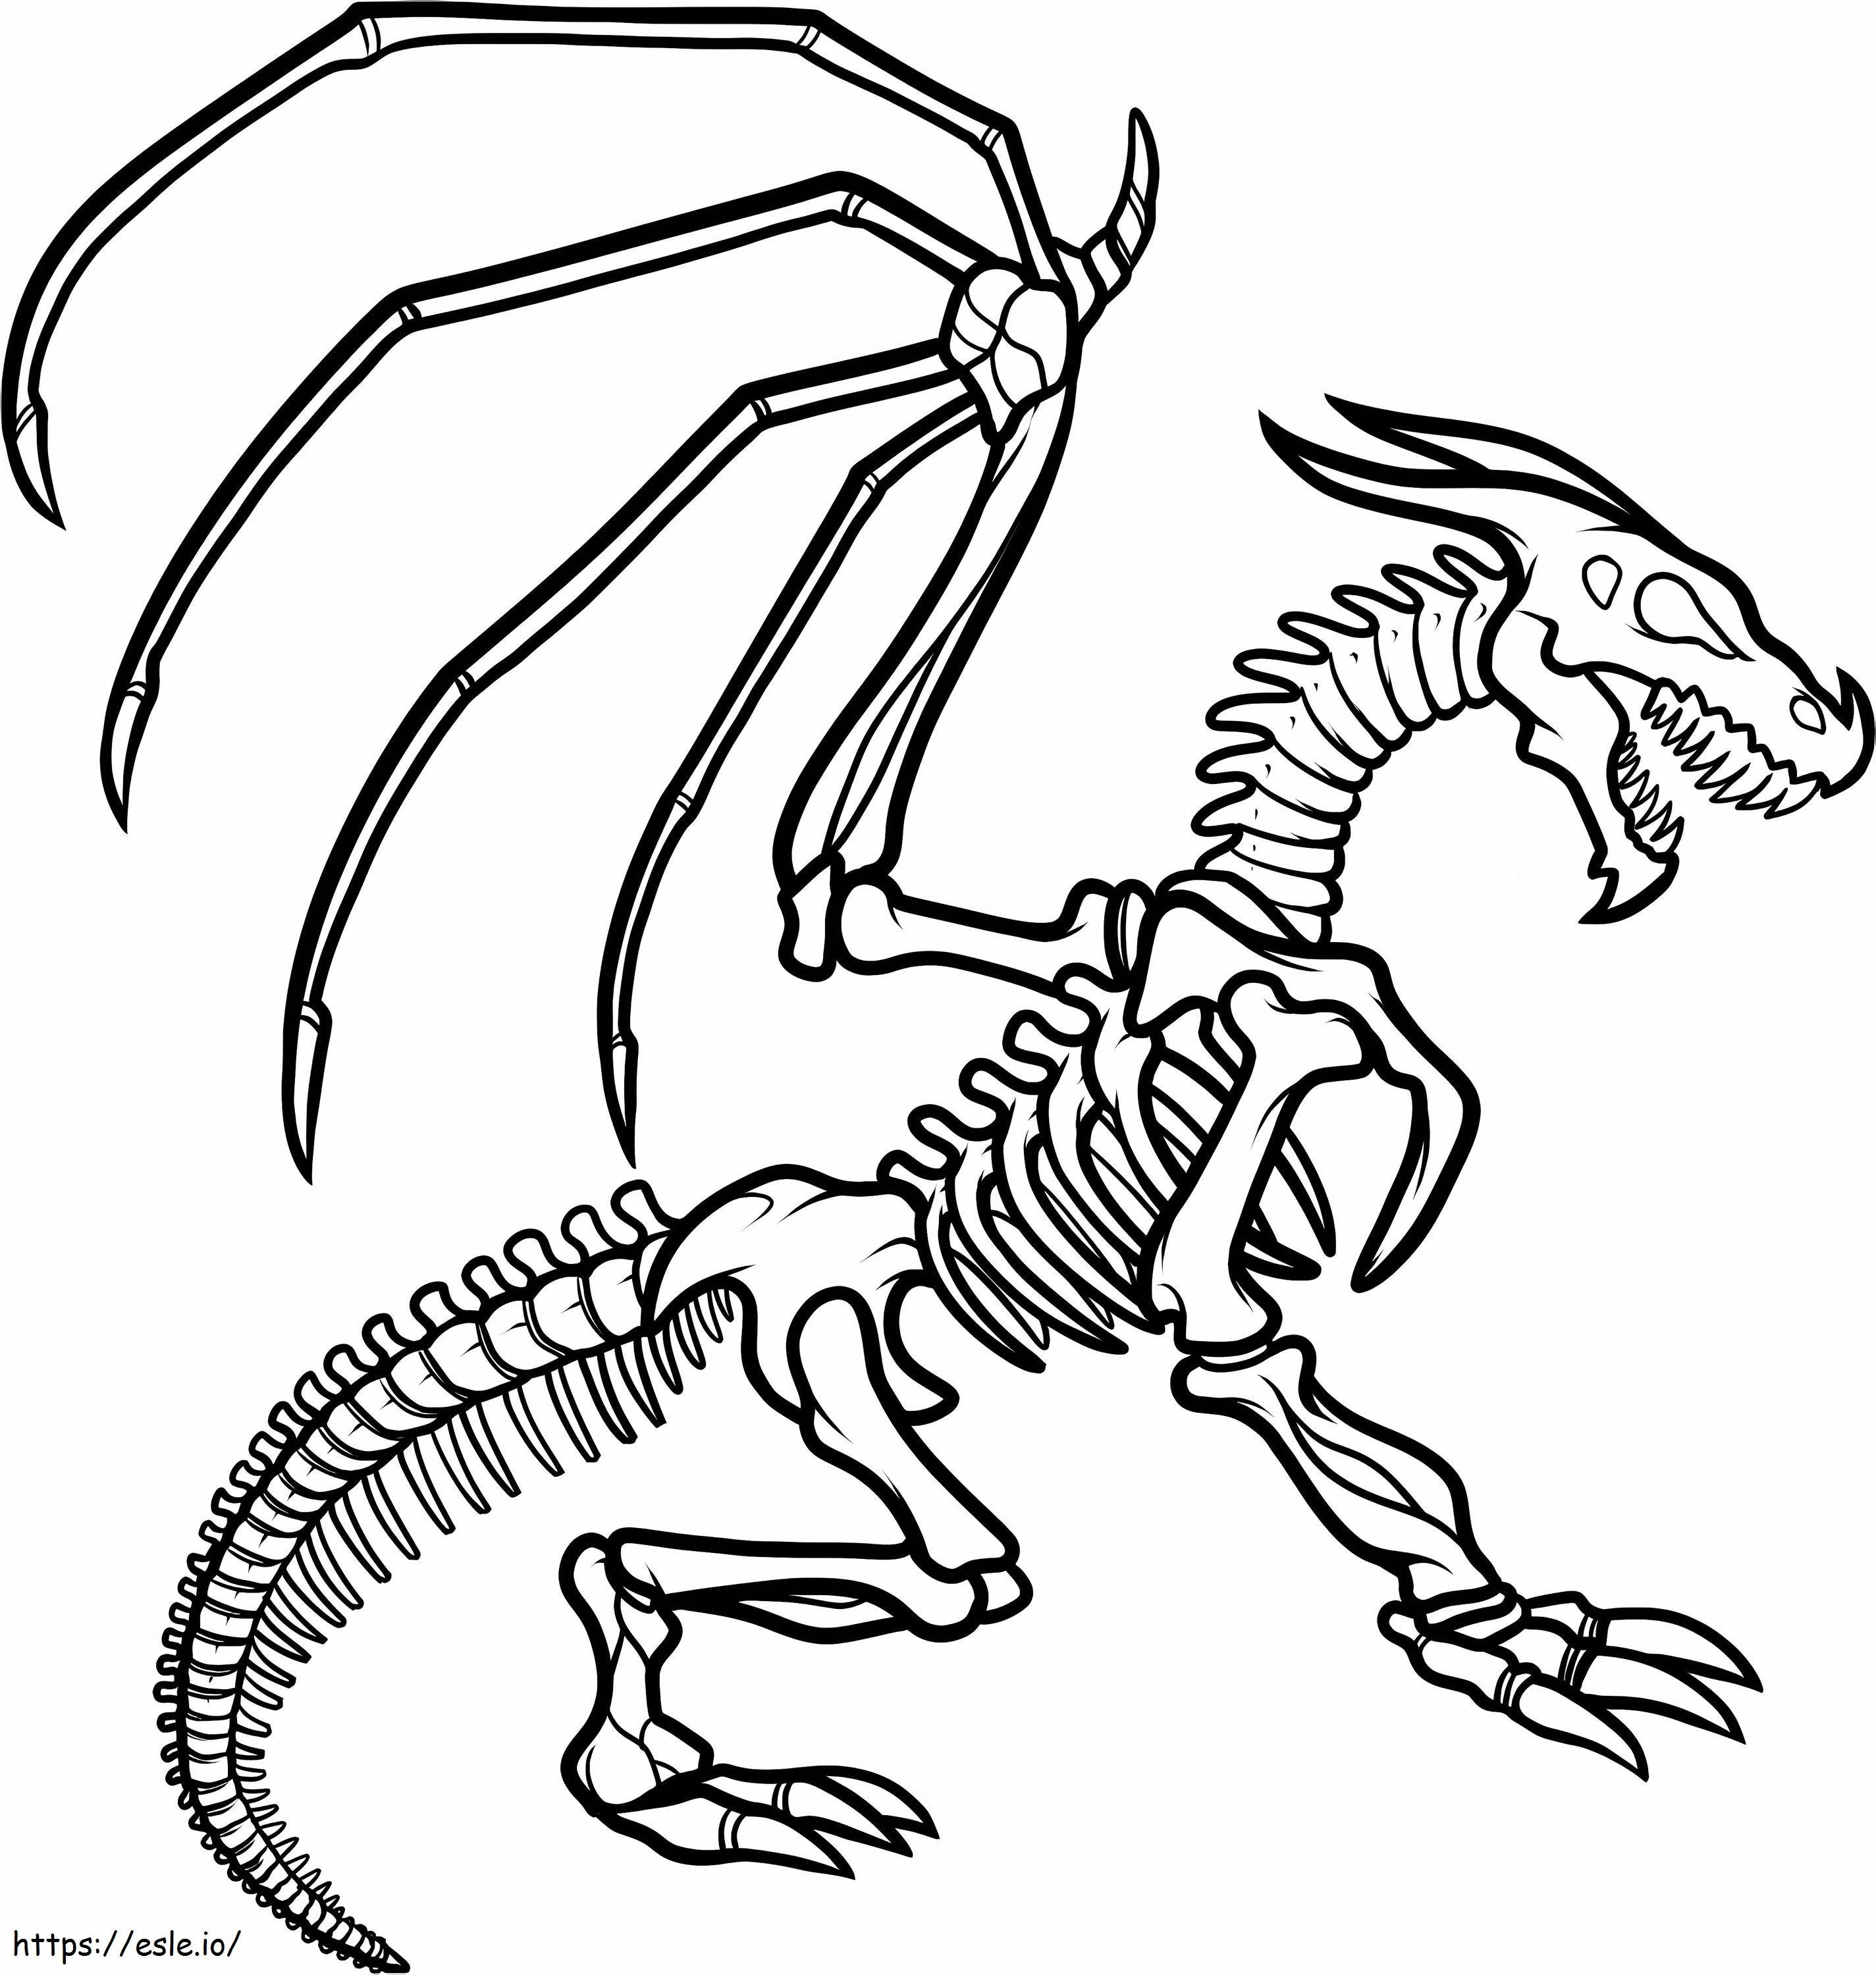 1547520862 Pré-escola Como desenhar o esqueleto do dragão Esqueleto do dragão por Ilovepacsterandclyde D8Jkzcq para colorir